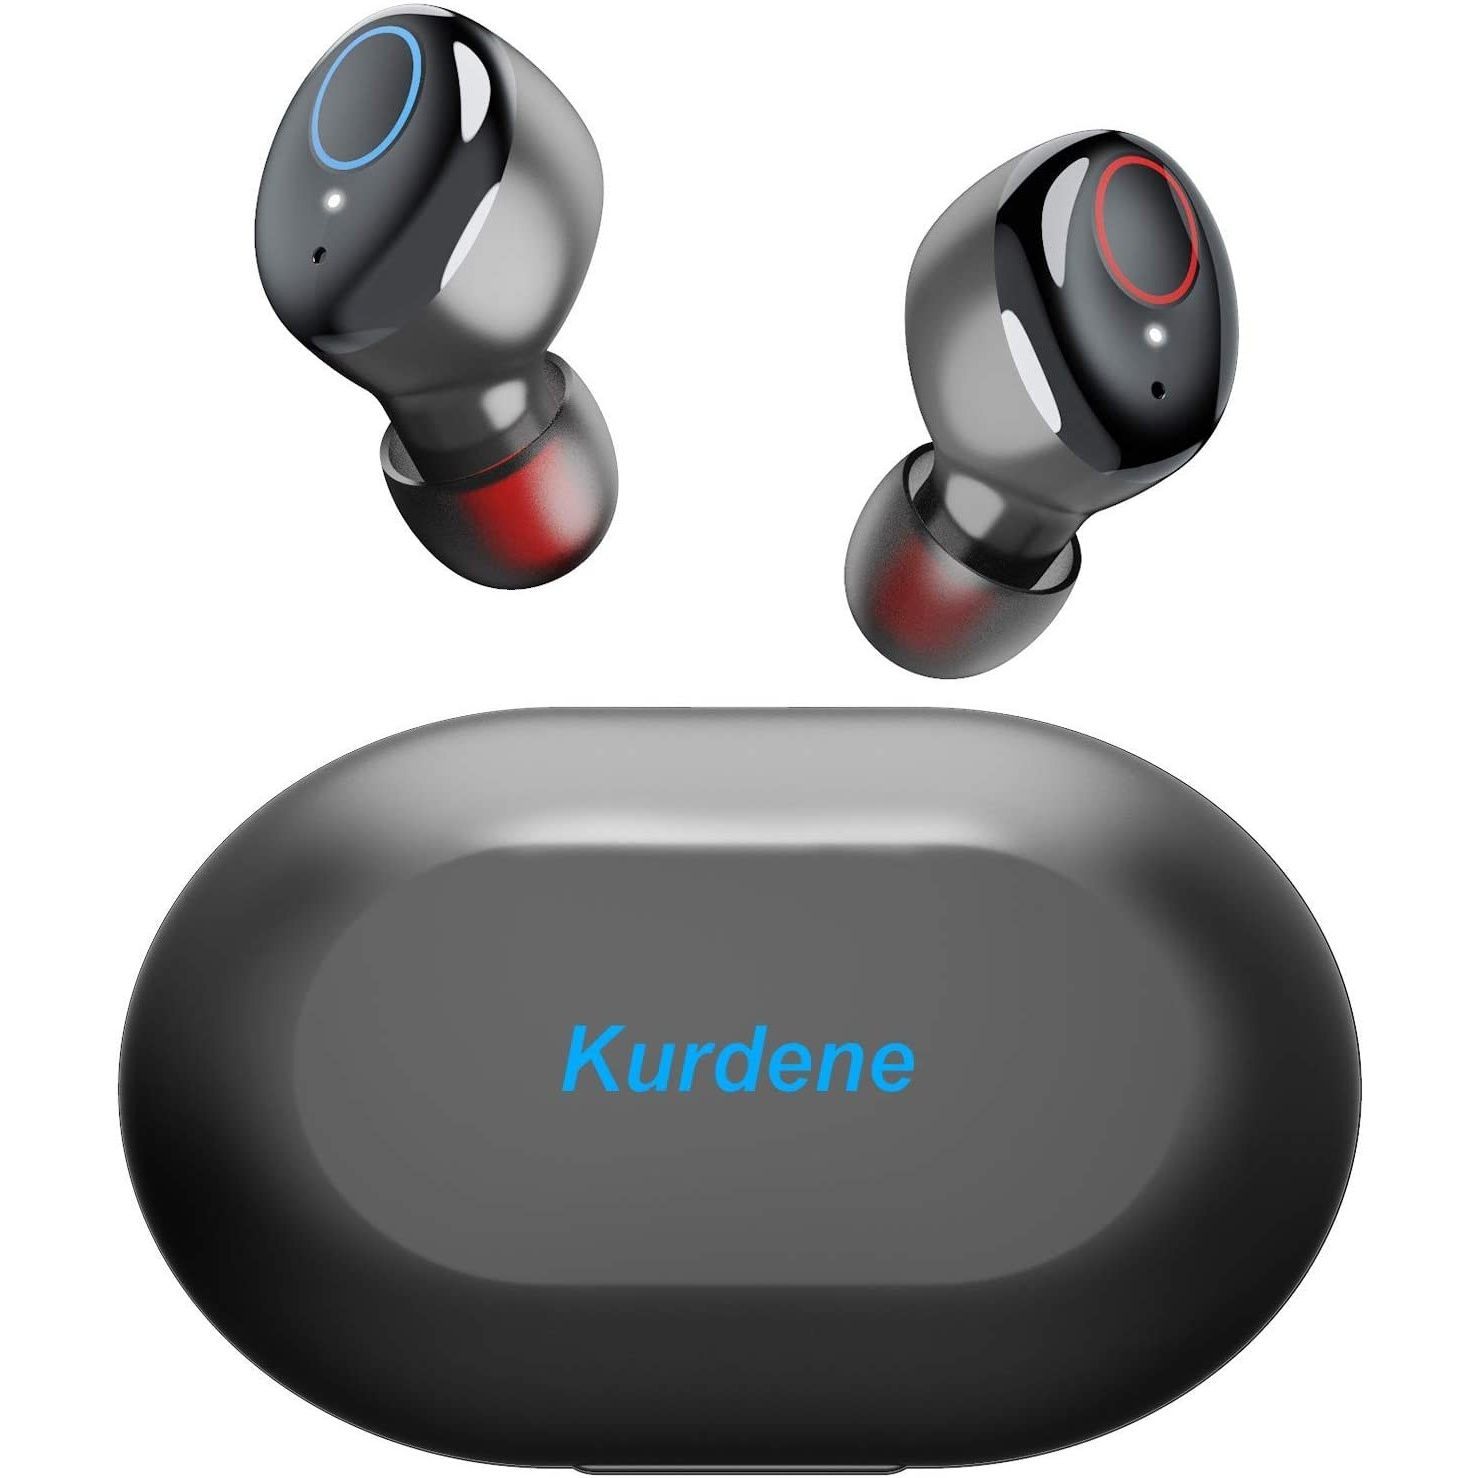 Kurdene S8 true wireless earbuds